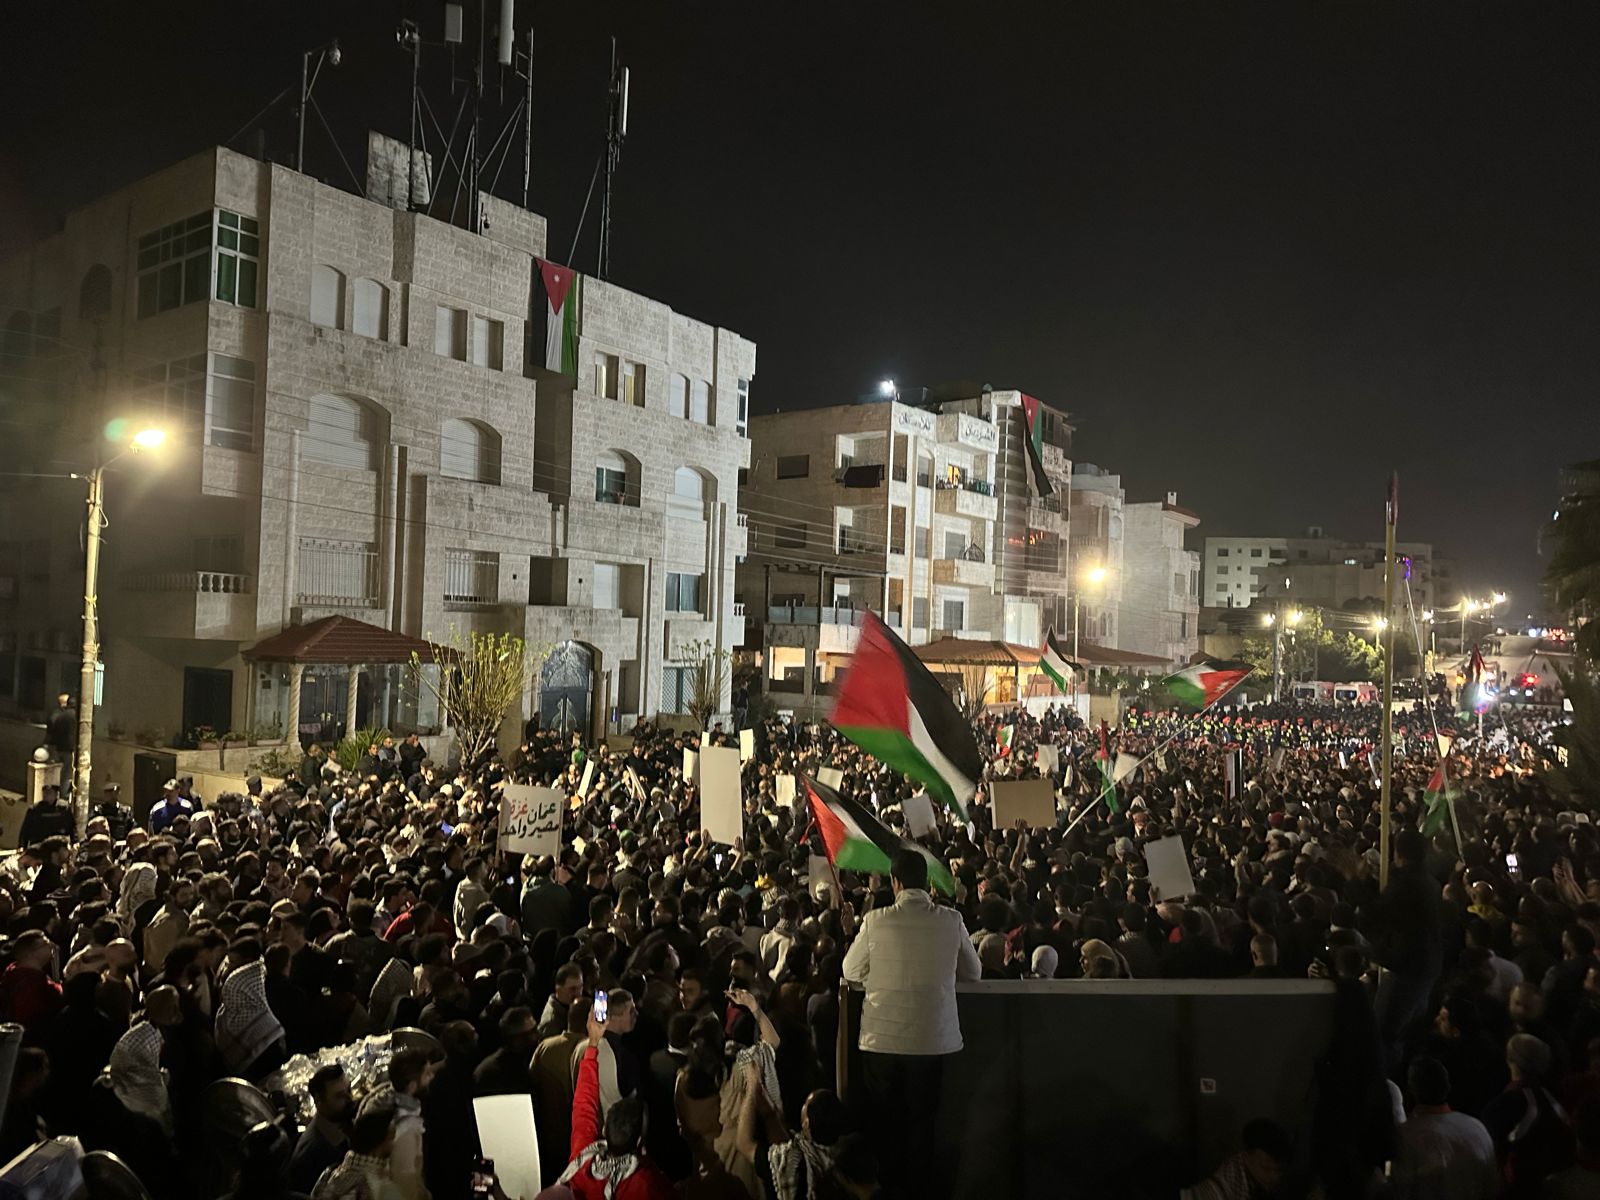 اكثر من (10) آلاف اردني يشاركون في حصار السفارة الصهيونية - فيديو